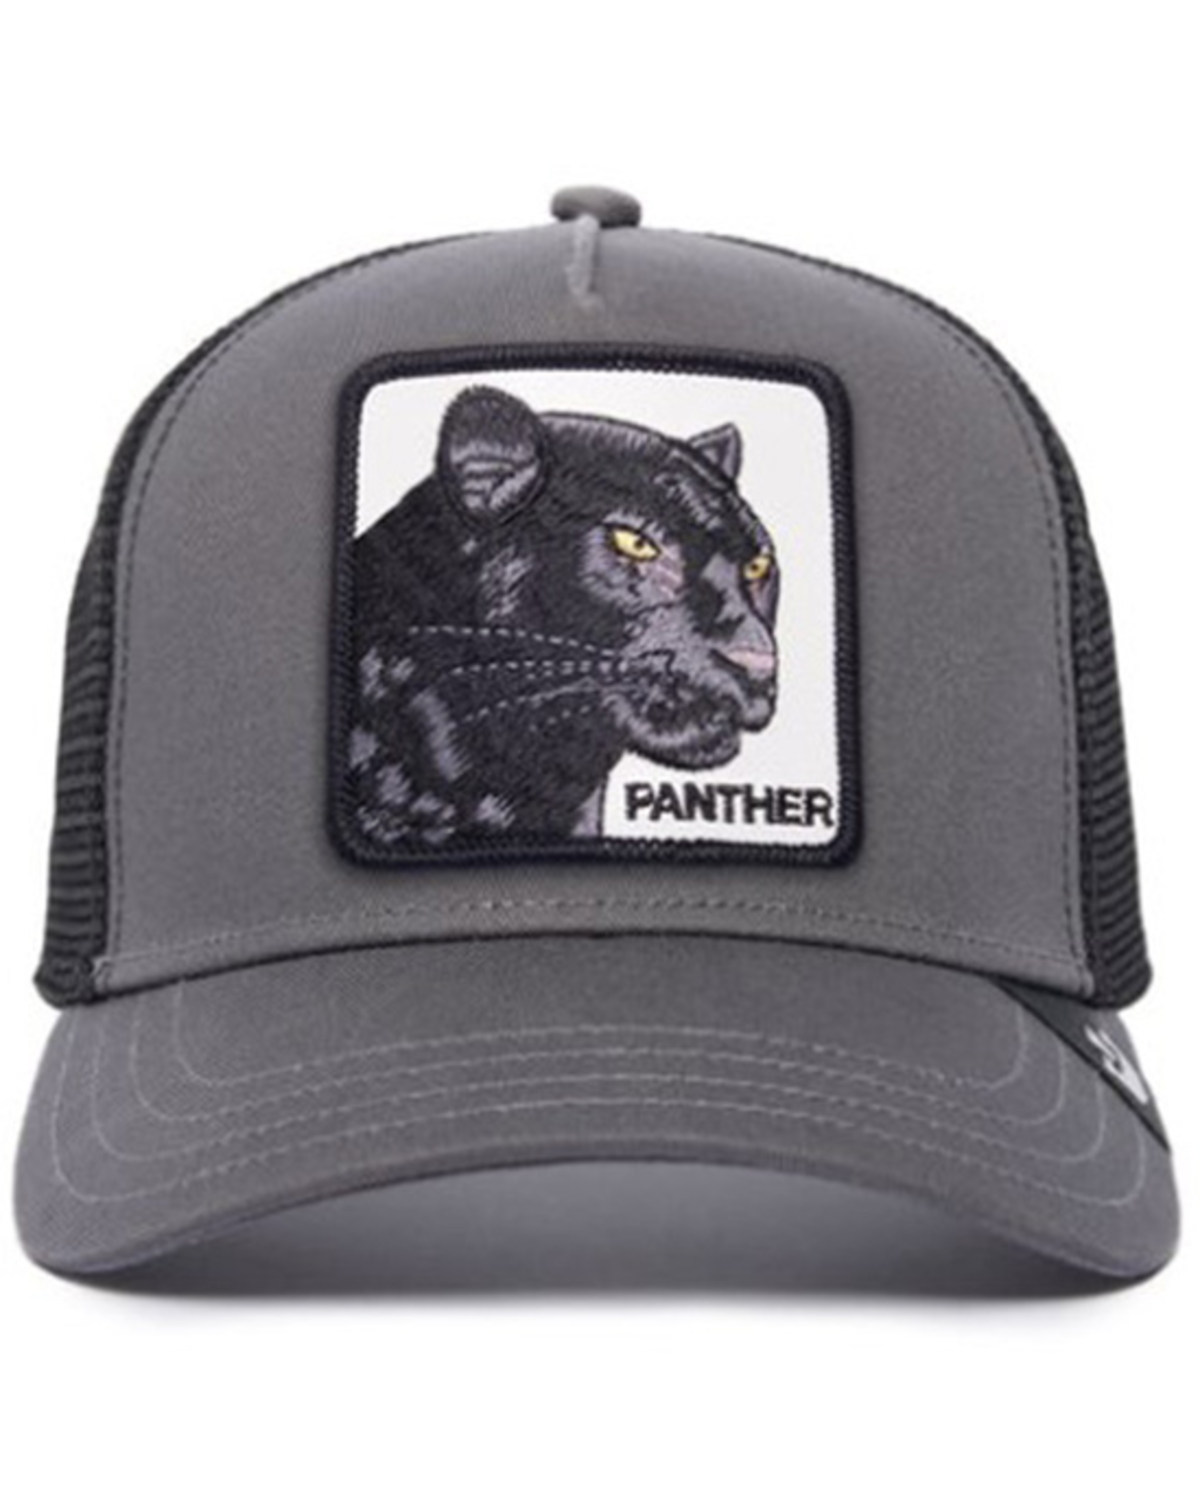 Goorin Bros Men's Panther Patch Ball Cap